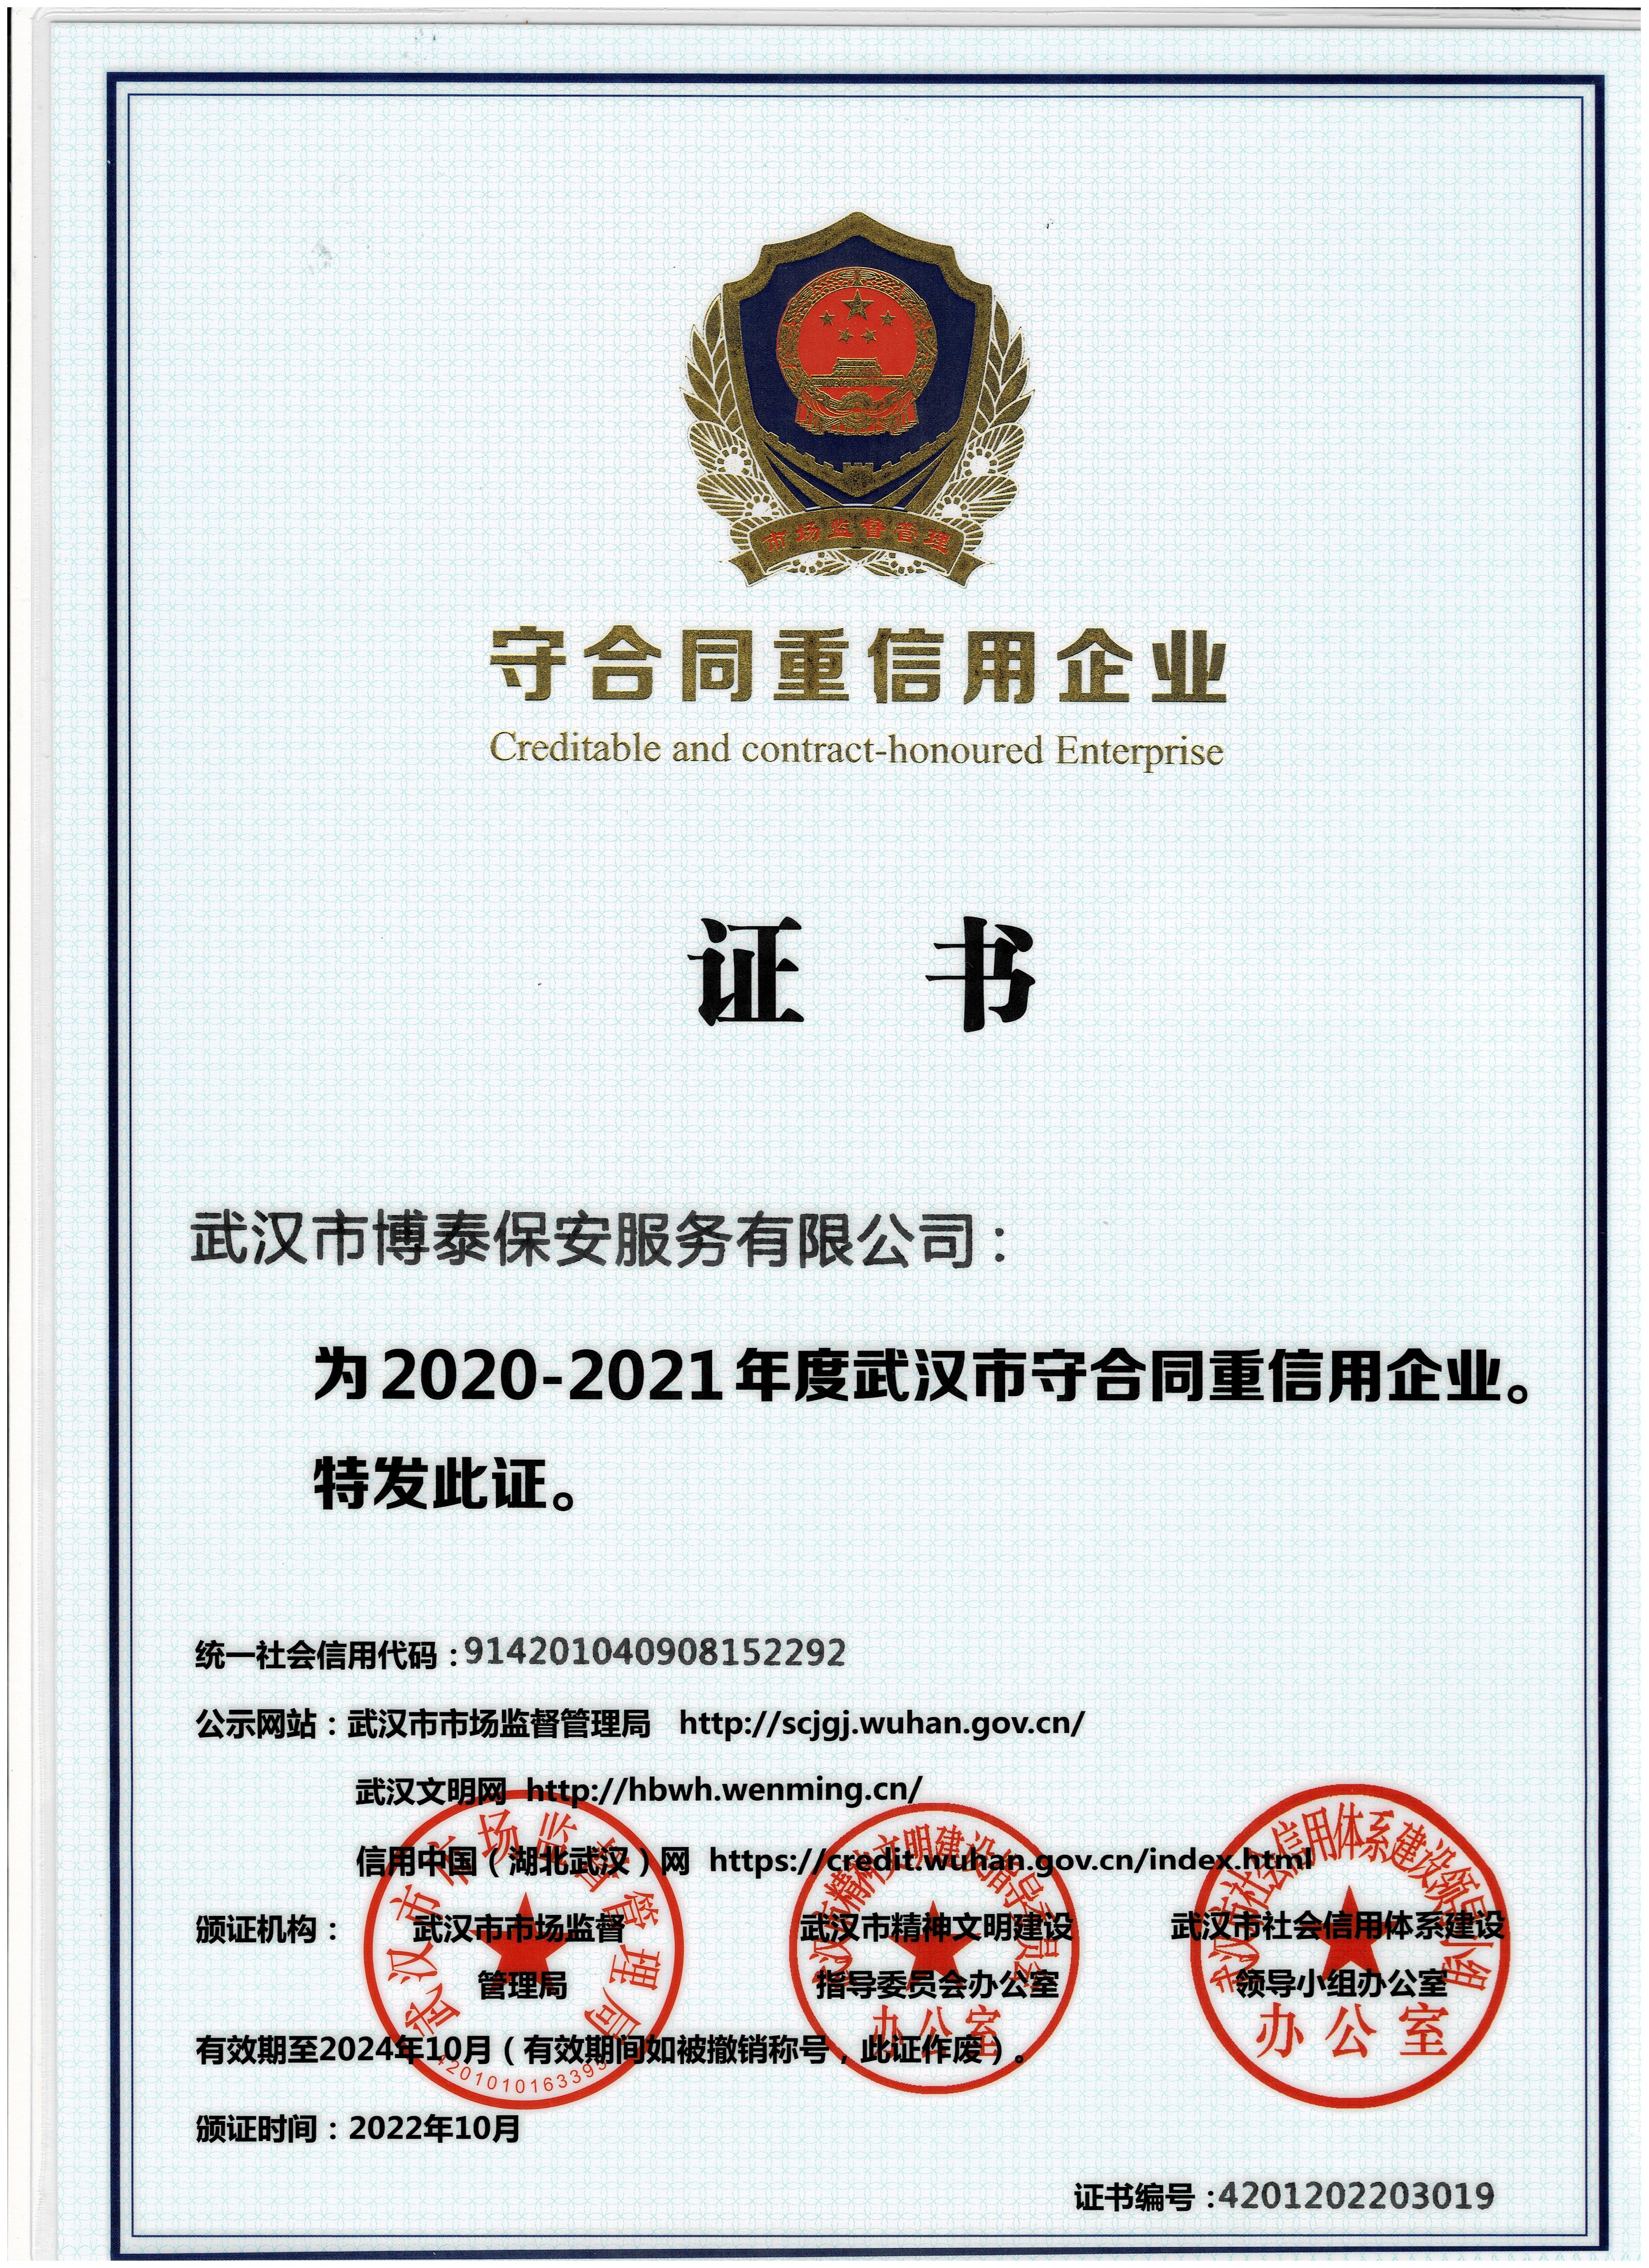 2020-2021年度武漢市守合同重信用企業